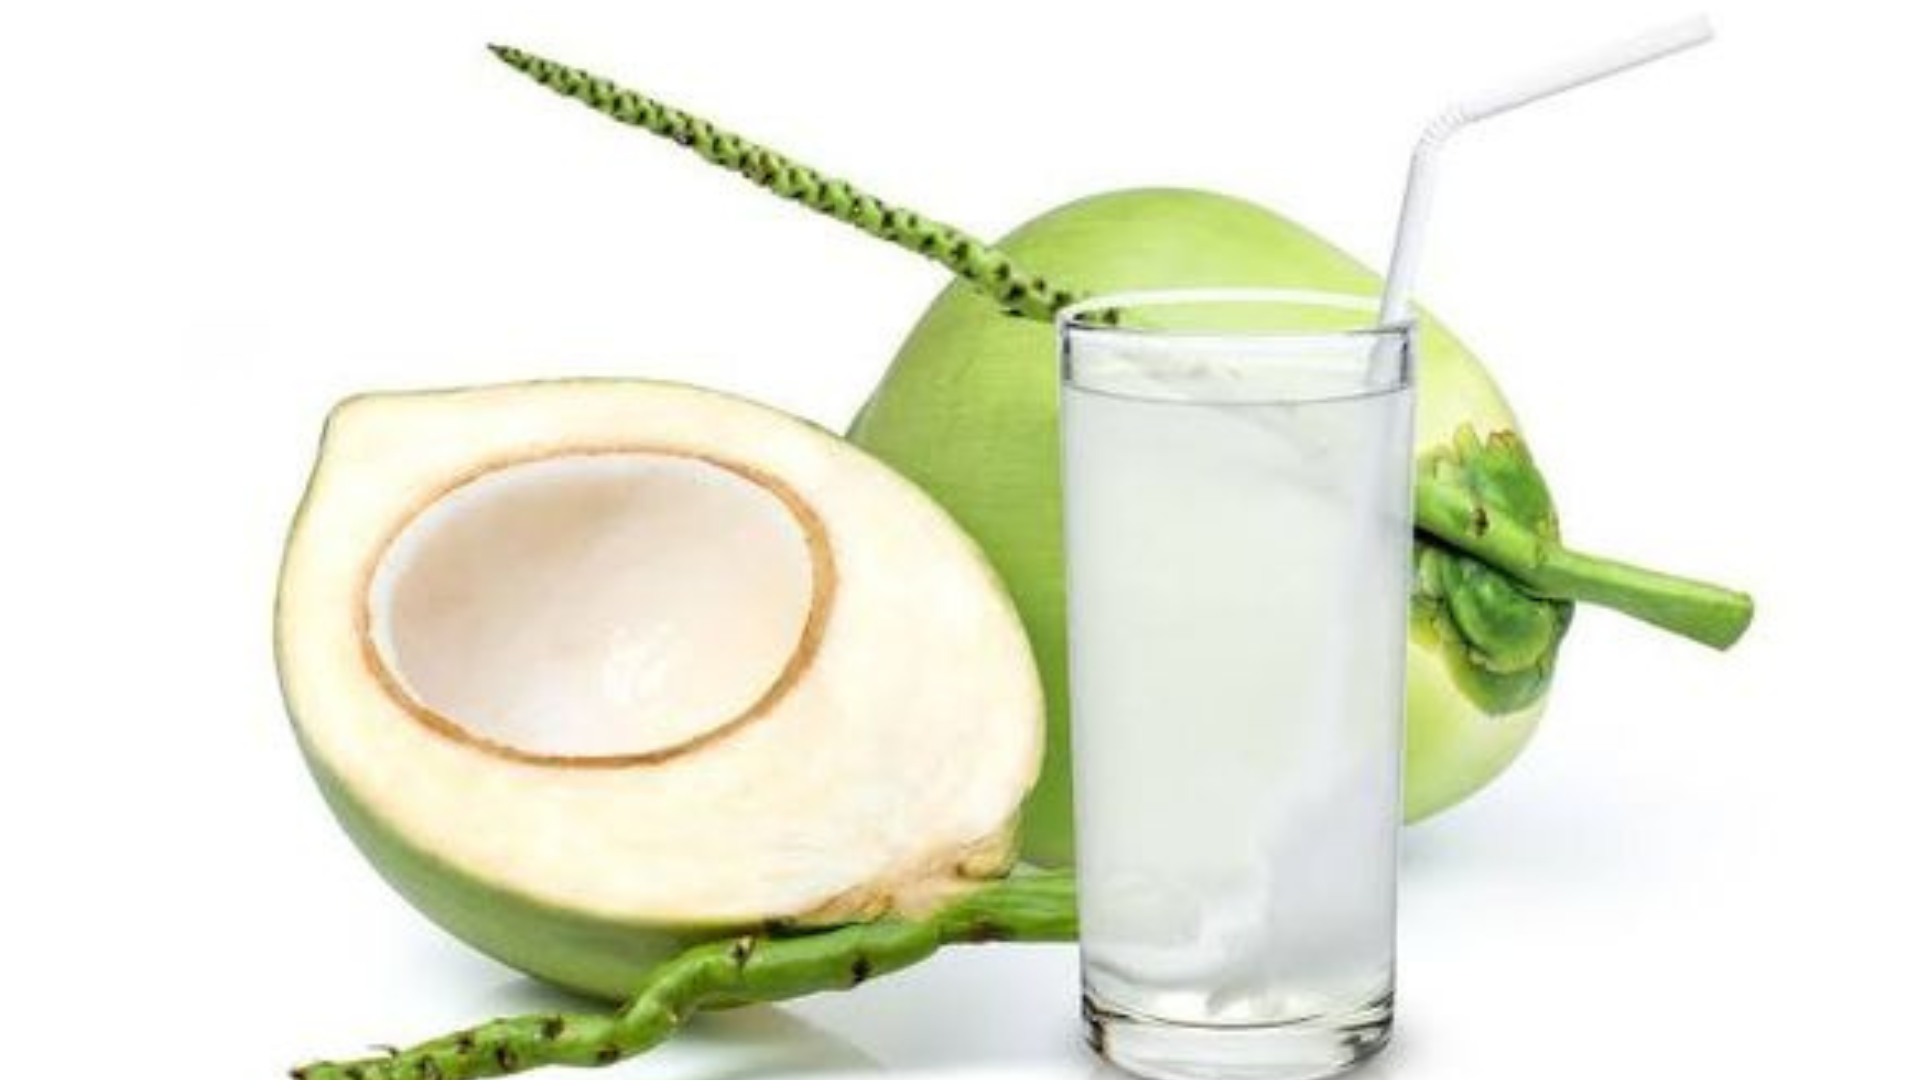 Uống nước dừa đem lại nhiều lợi ích sức khoẻ (Ảnh: Pinterest)